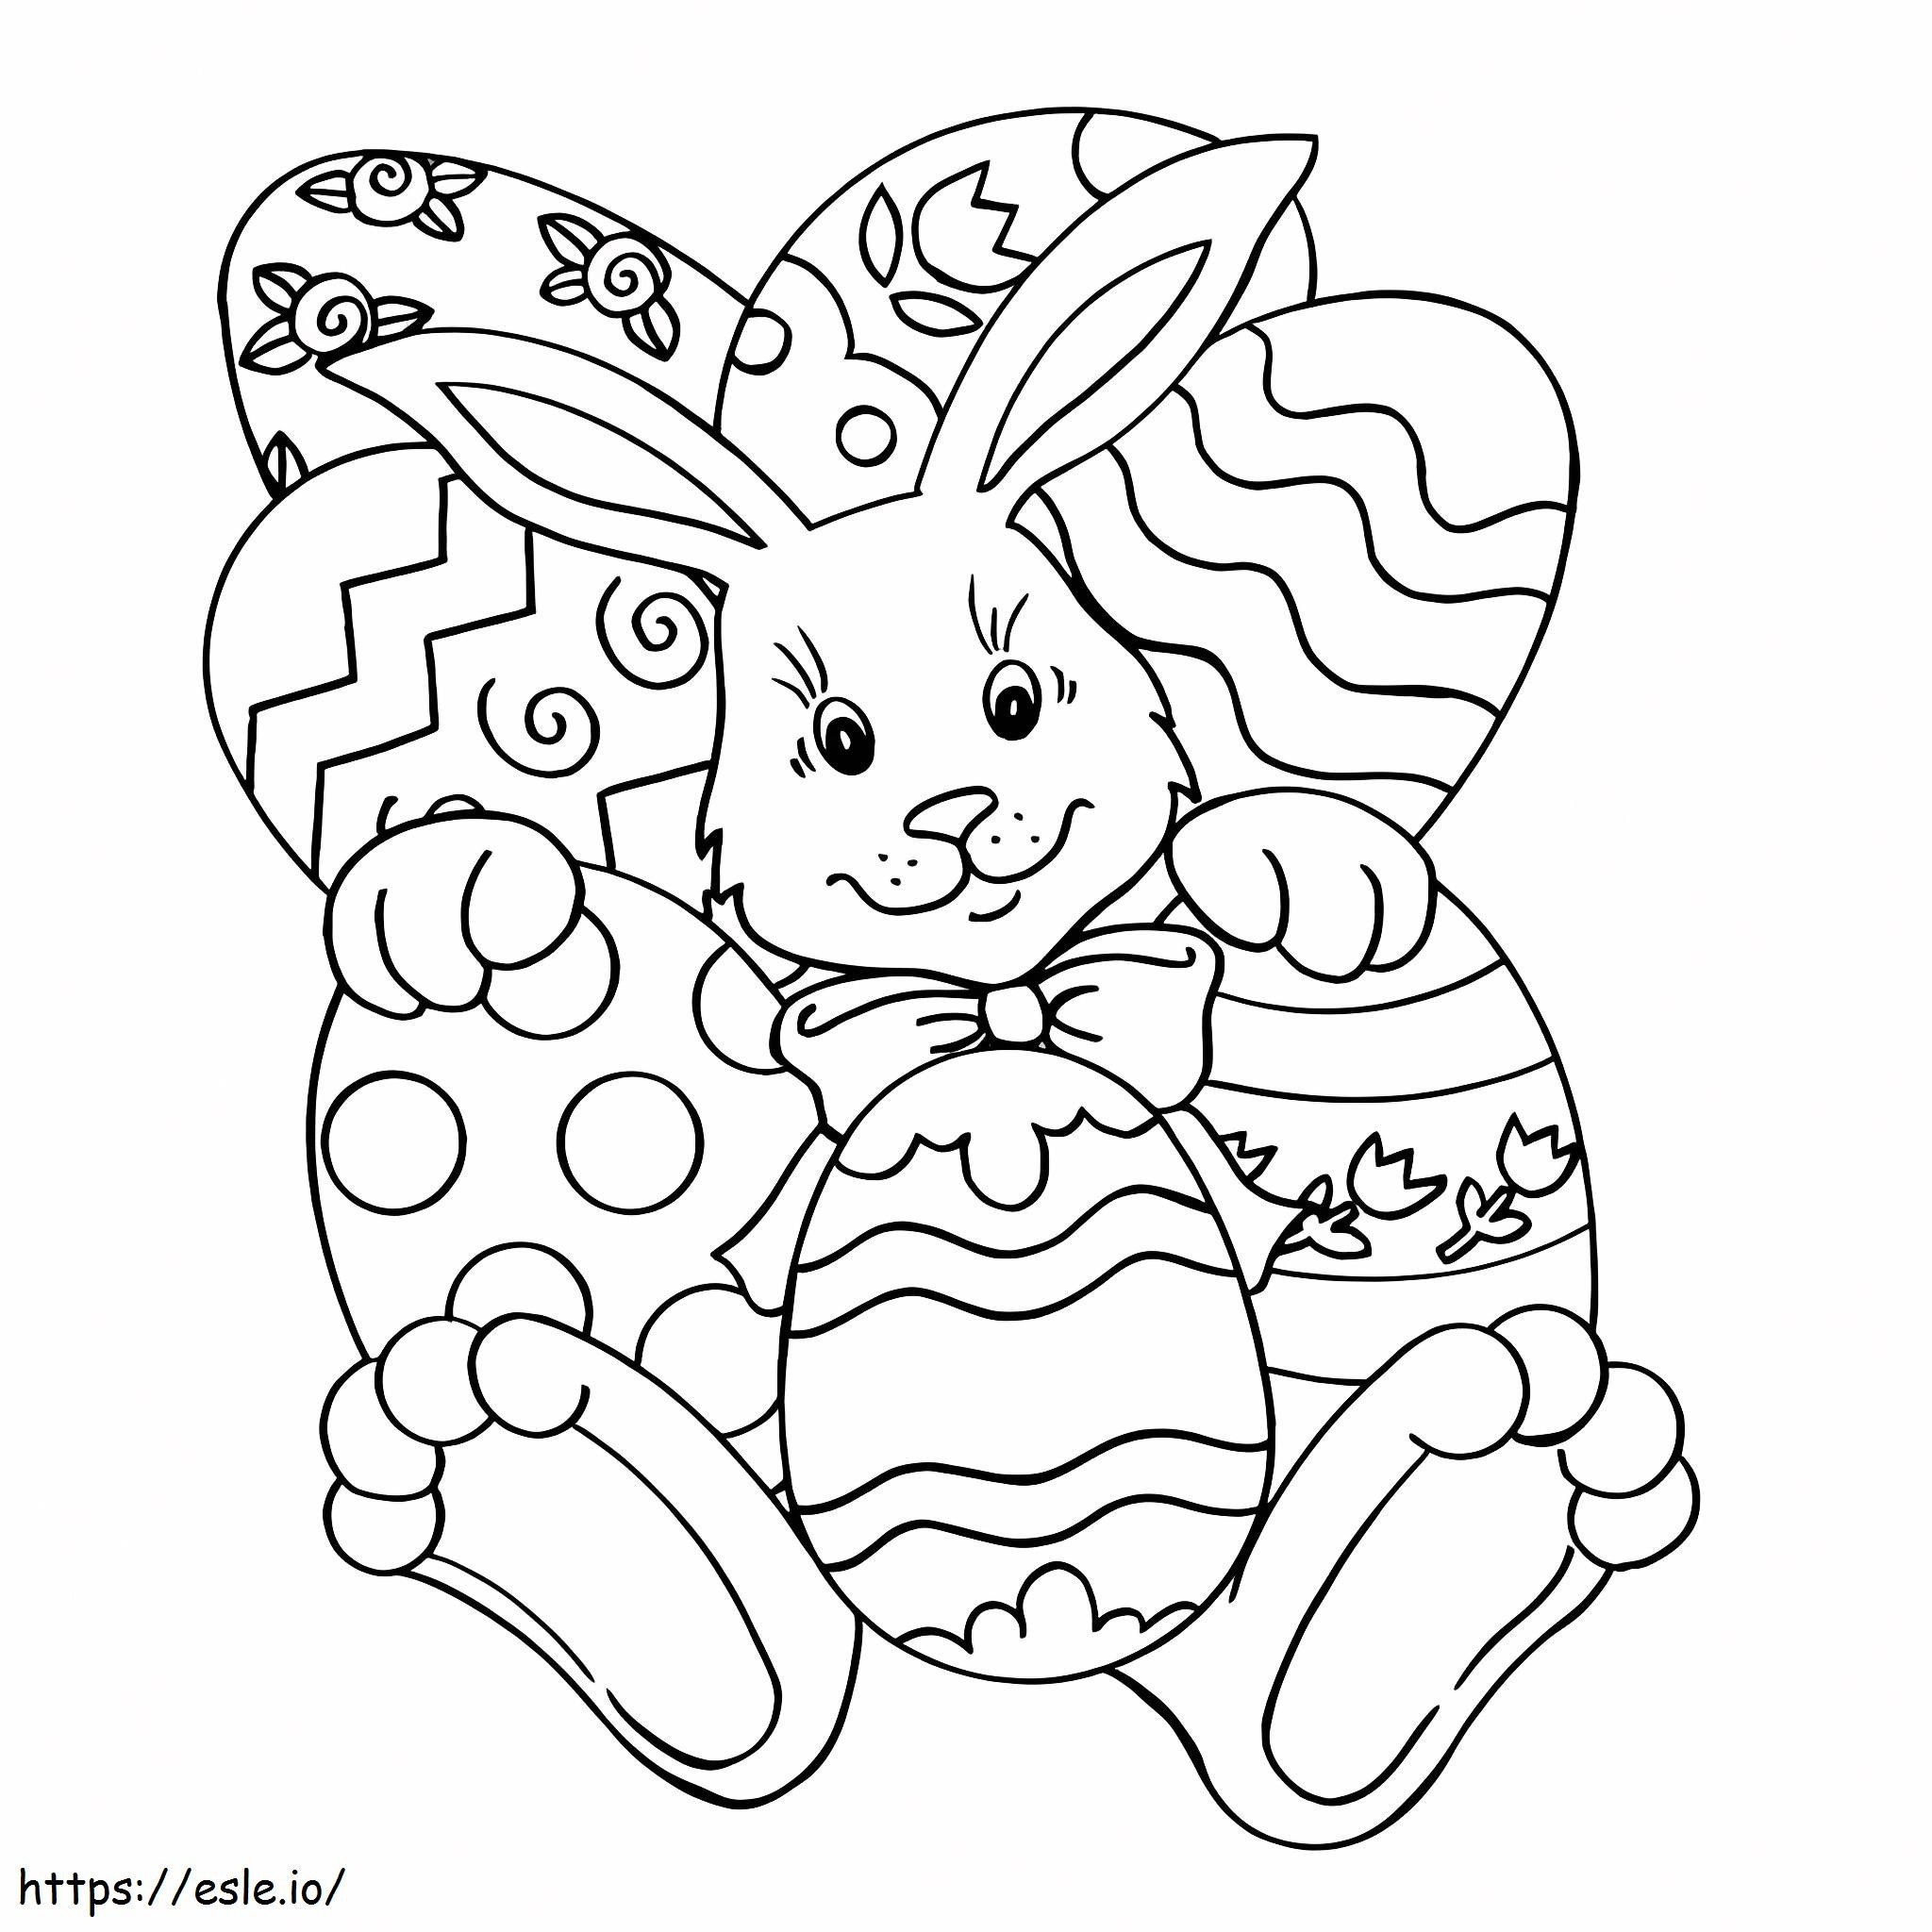 Paskalya yumurtalarıyla yatan tavşan boyama